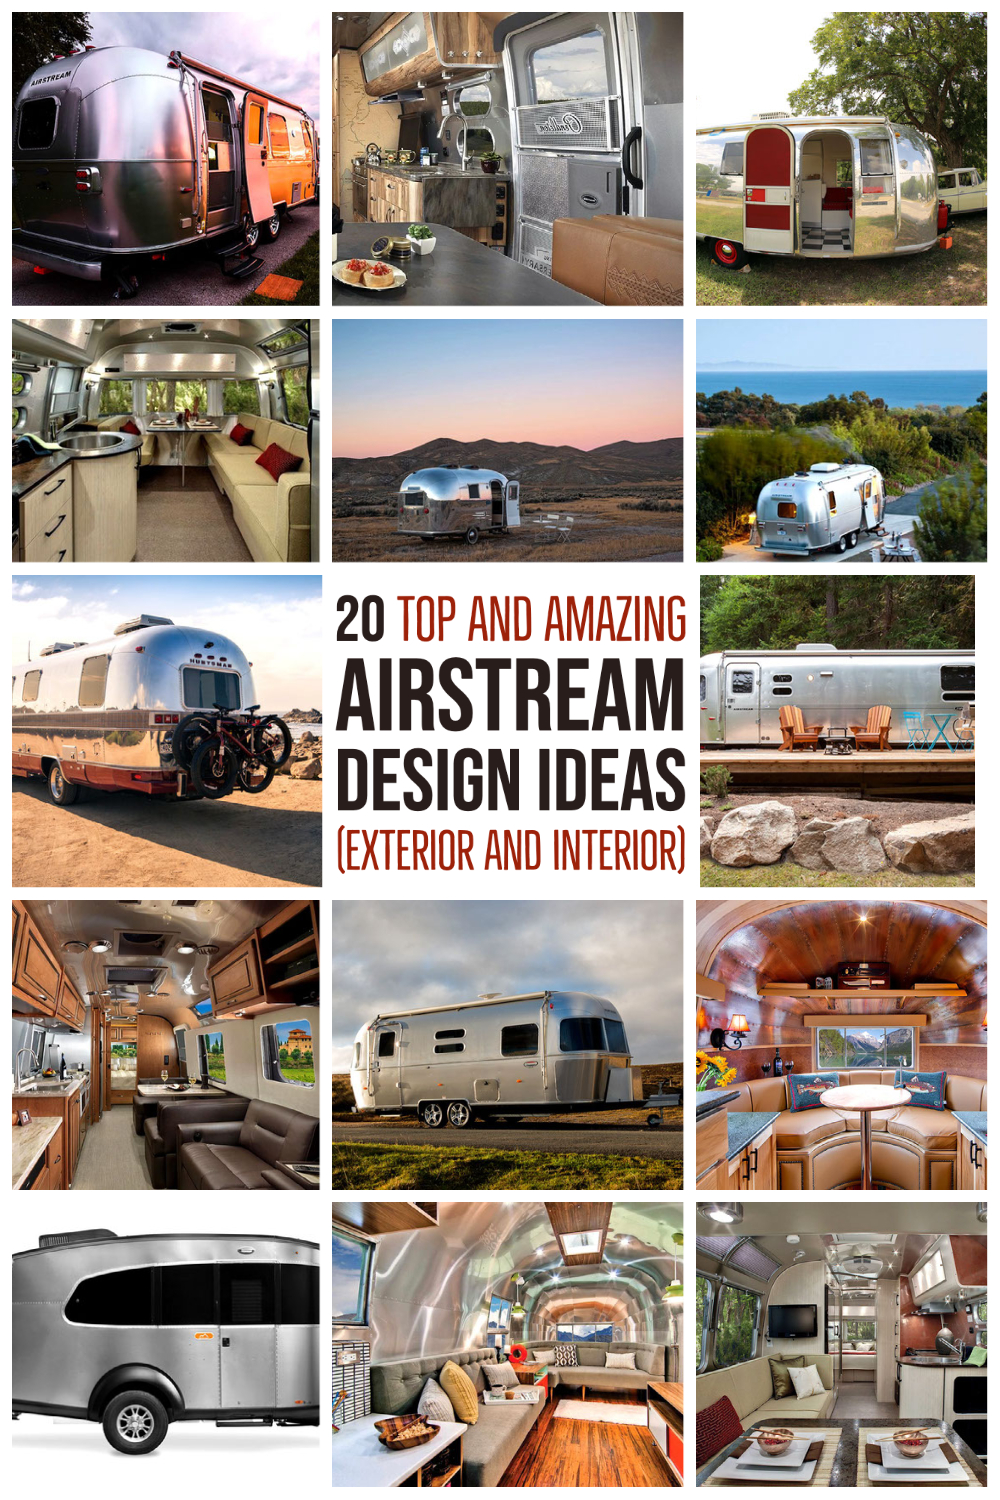 20 Top And Amazing Airstream Design Ideas (Exterior And Interior) (1)